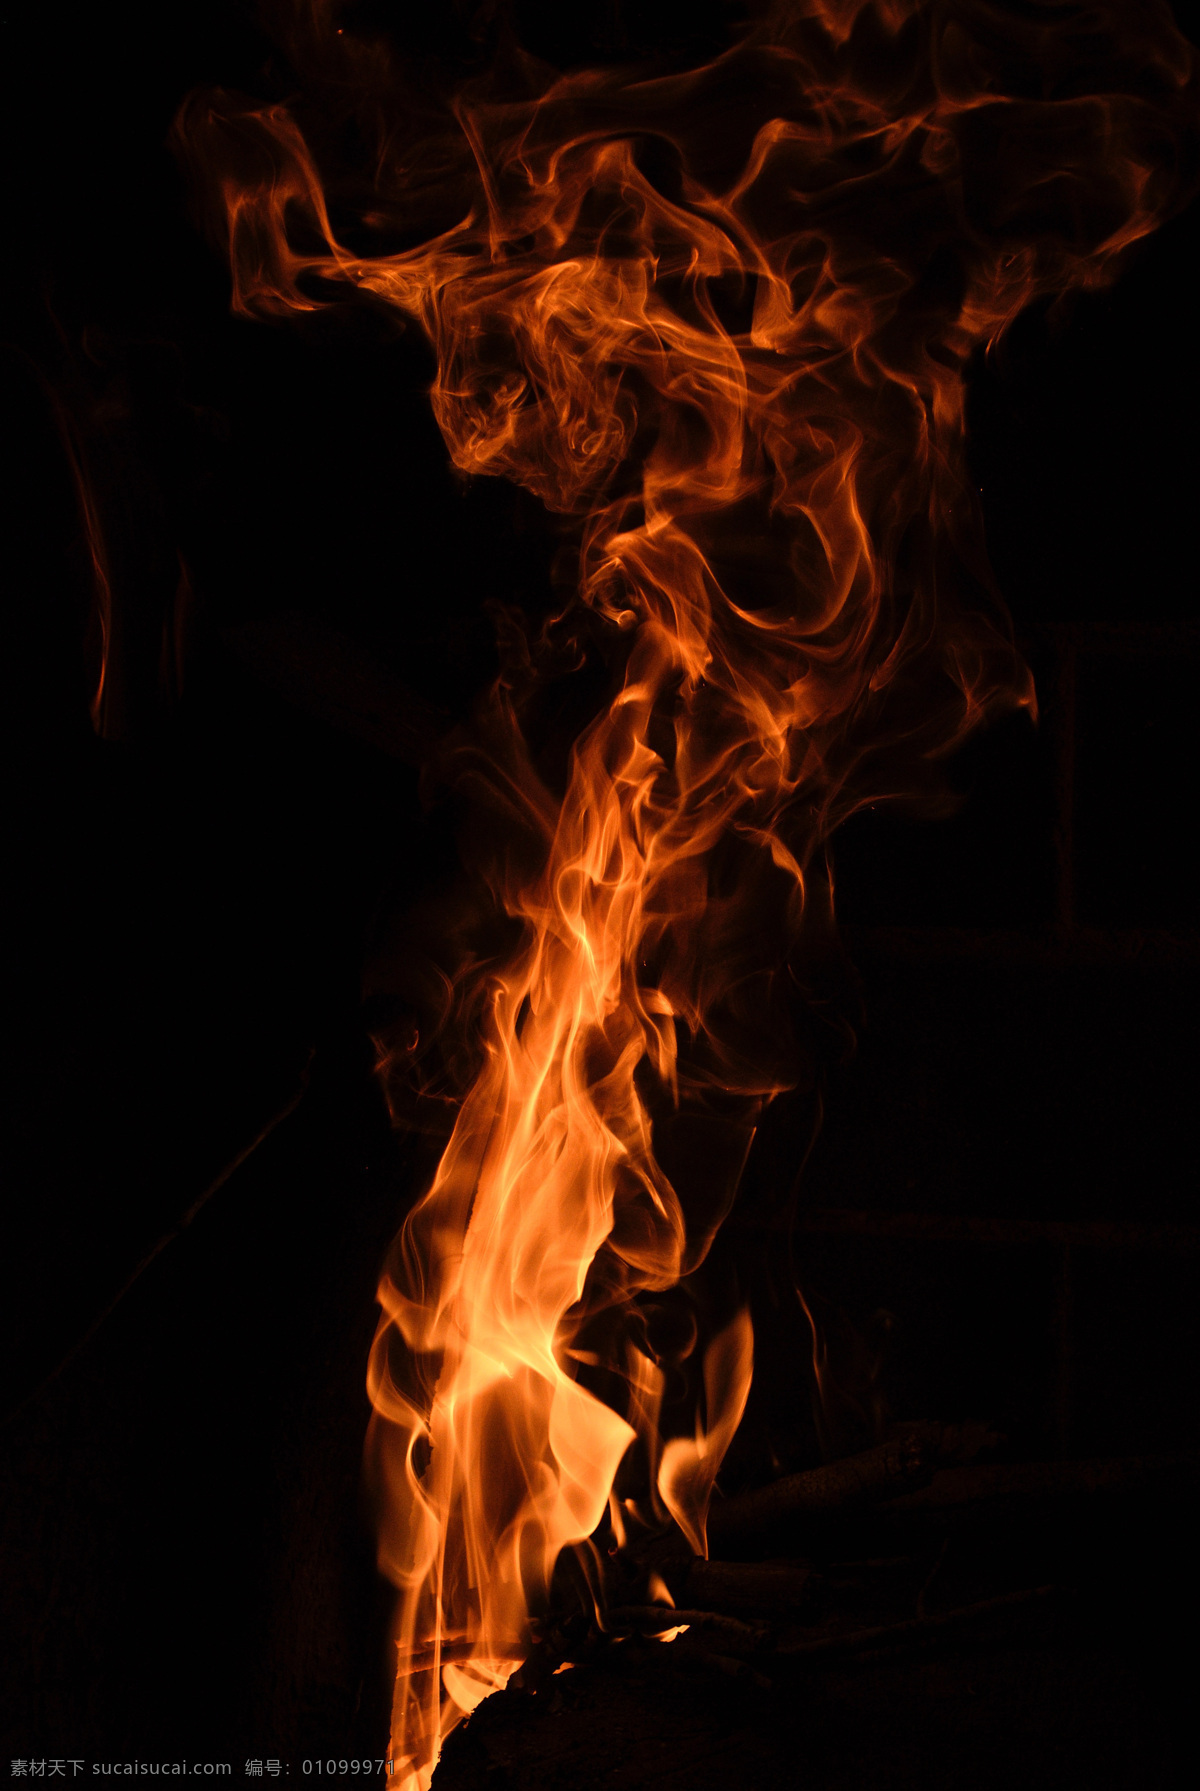 火焰火苗燃烧 火焰 火苗 火焰火苗 炙热 燃烧 燃烧的火苗 炙热的火焰 生活百科 生活素材